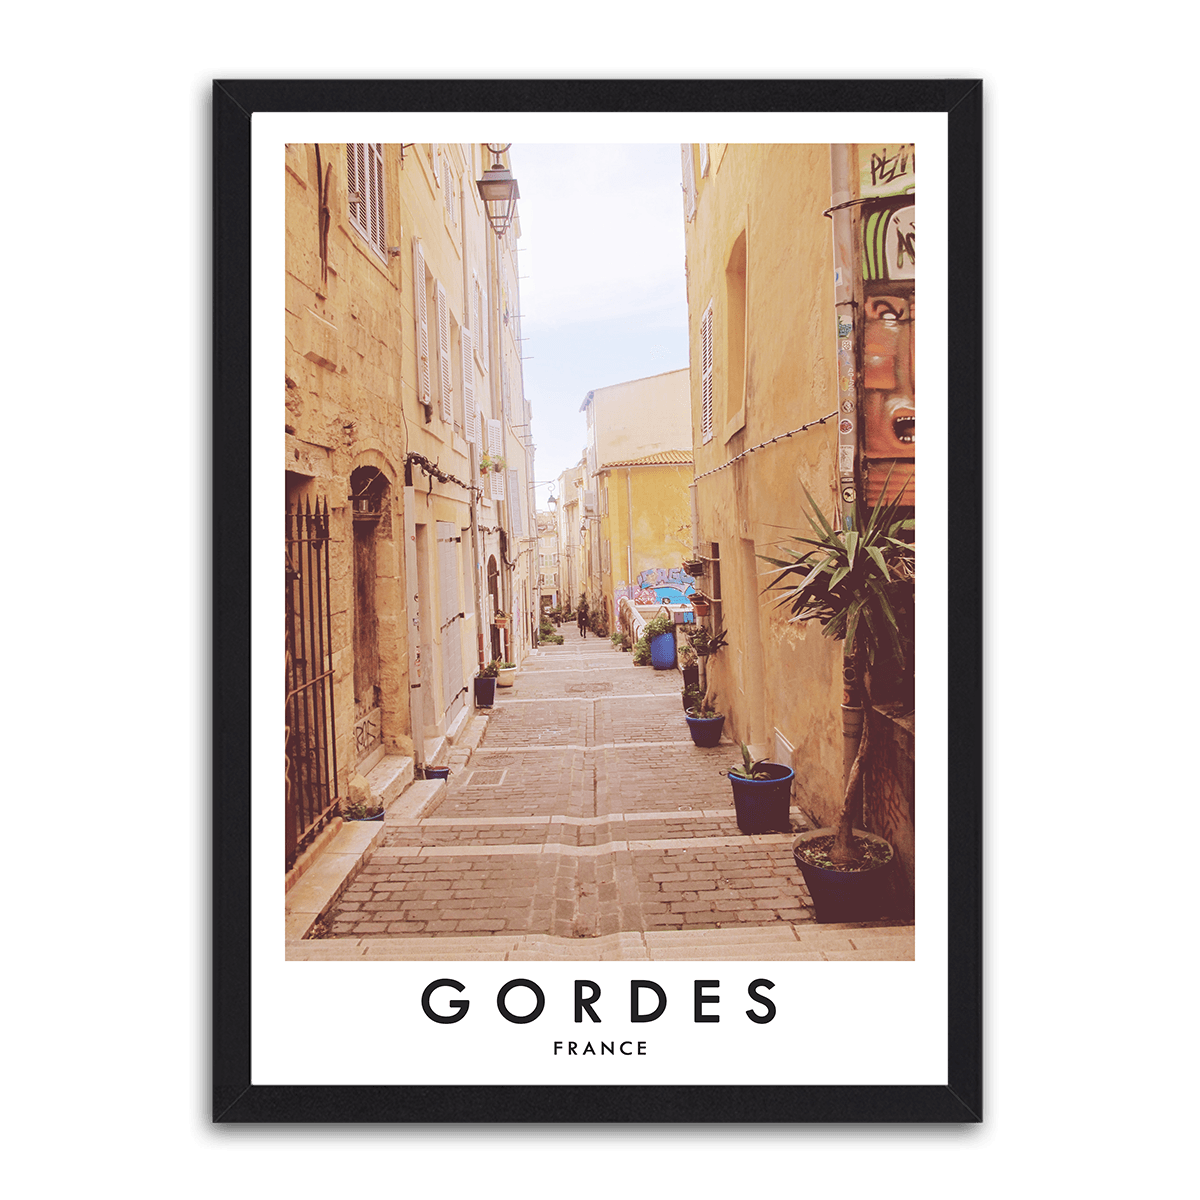 Provencal Passage - Gordes, France - PixMagic